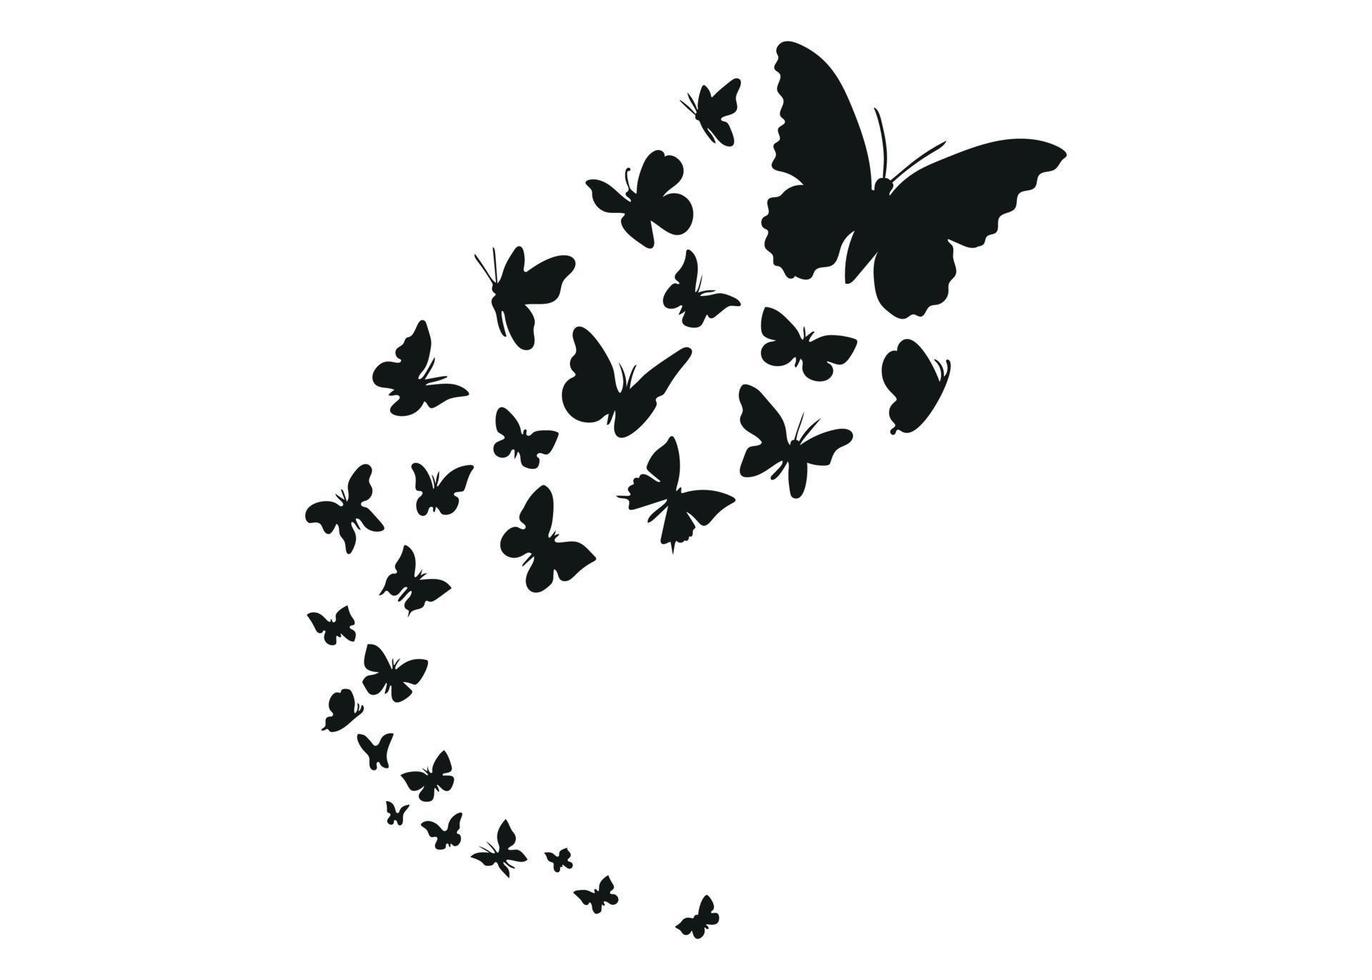 conjunto de borboletas voando no horizonte. ilustração em vetor silhueta negra